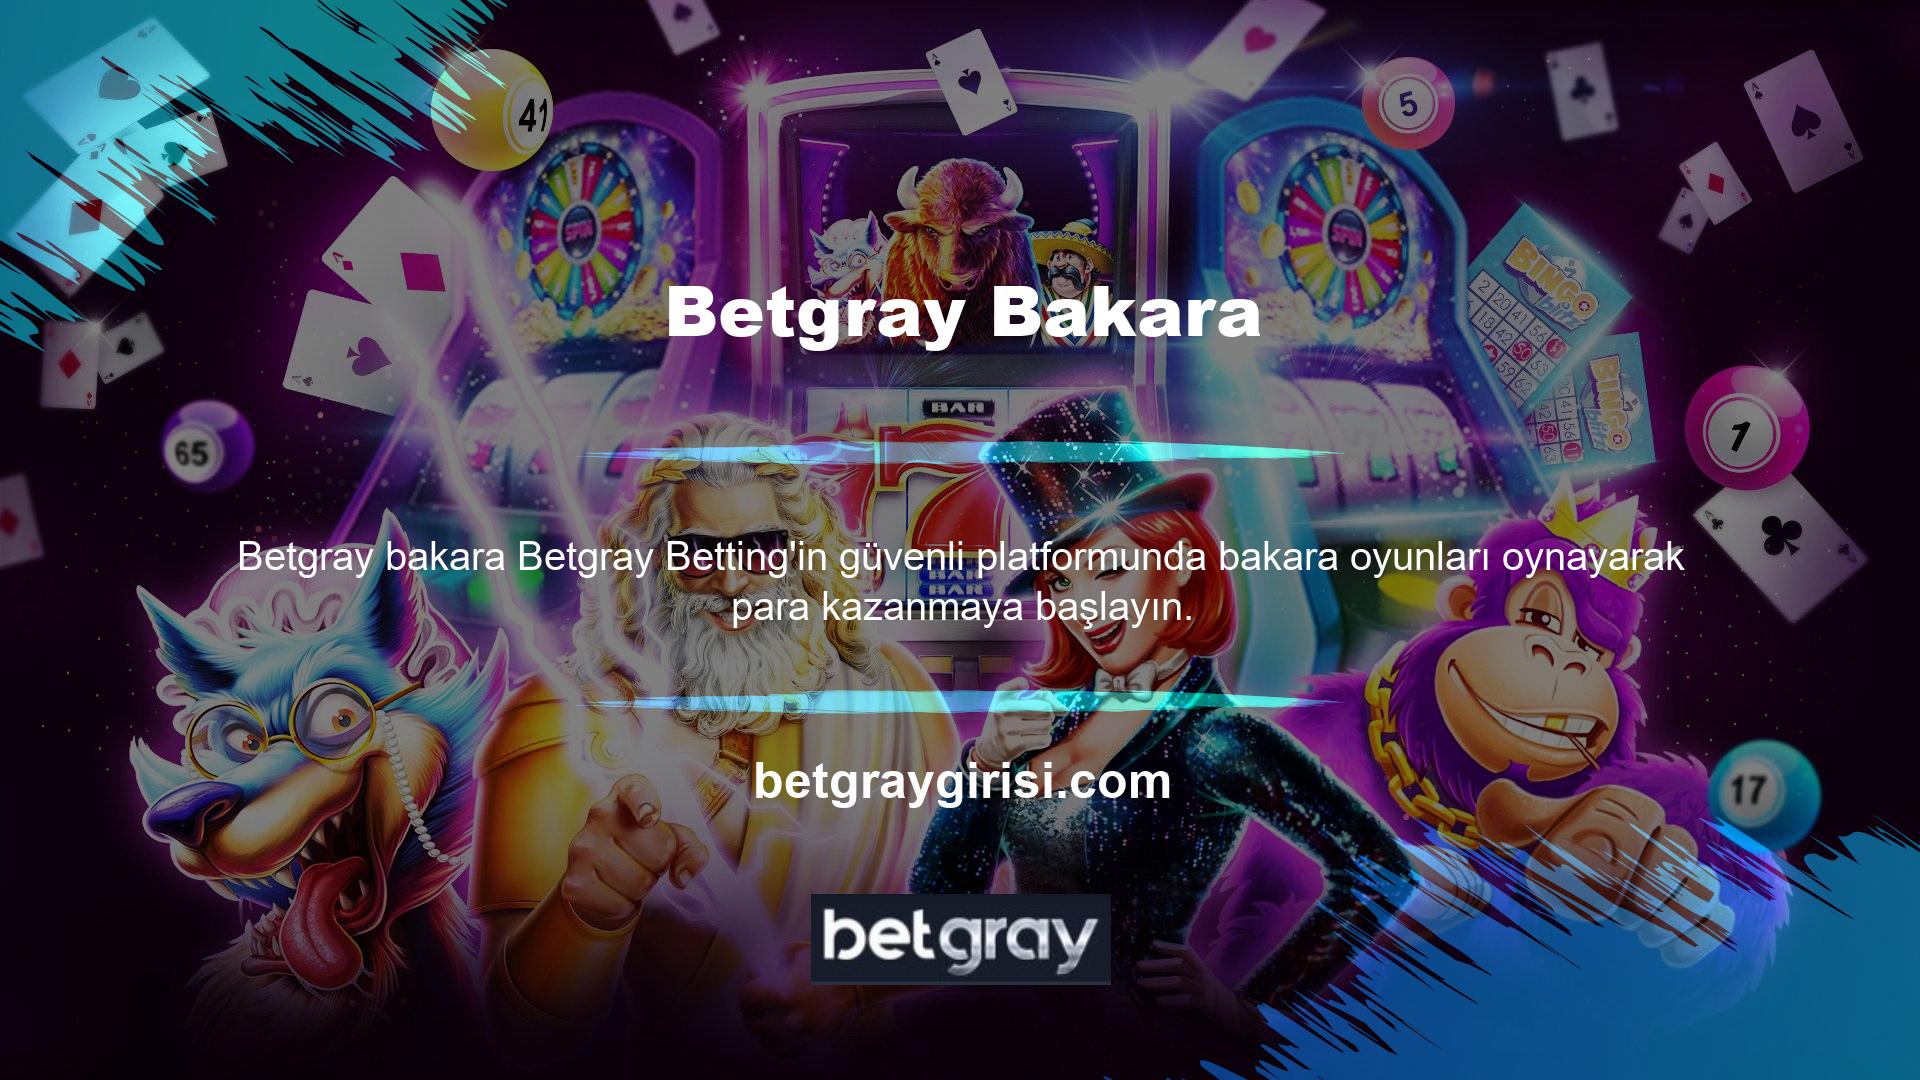 Her ödülde olduğu gibi, Katılımcılar ve Kullanıcılar herhangi bir Bakara ödülüne bahis yaparken Betgray bahis kurallarına uymalıdır